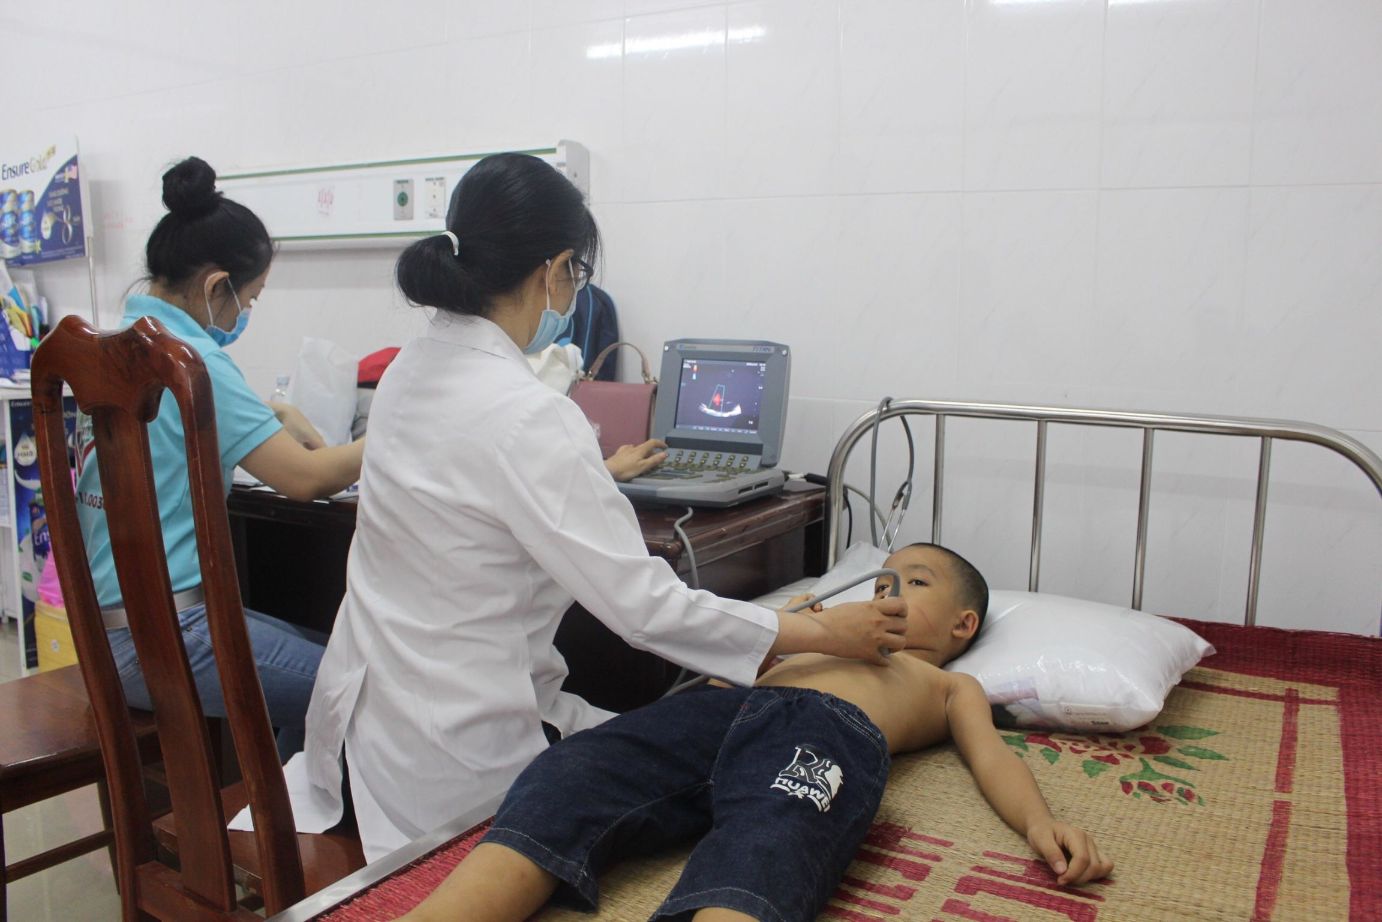 Bác Sĩ Siêu âm Tim Cho Trẻ Tại Phòng Khám Lưu động ở Đăk Lăk Năm 2020. Doctor Performed Cardiac Ultrasound On A Child In Dak Lak 1 1